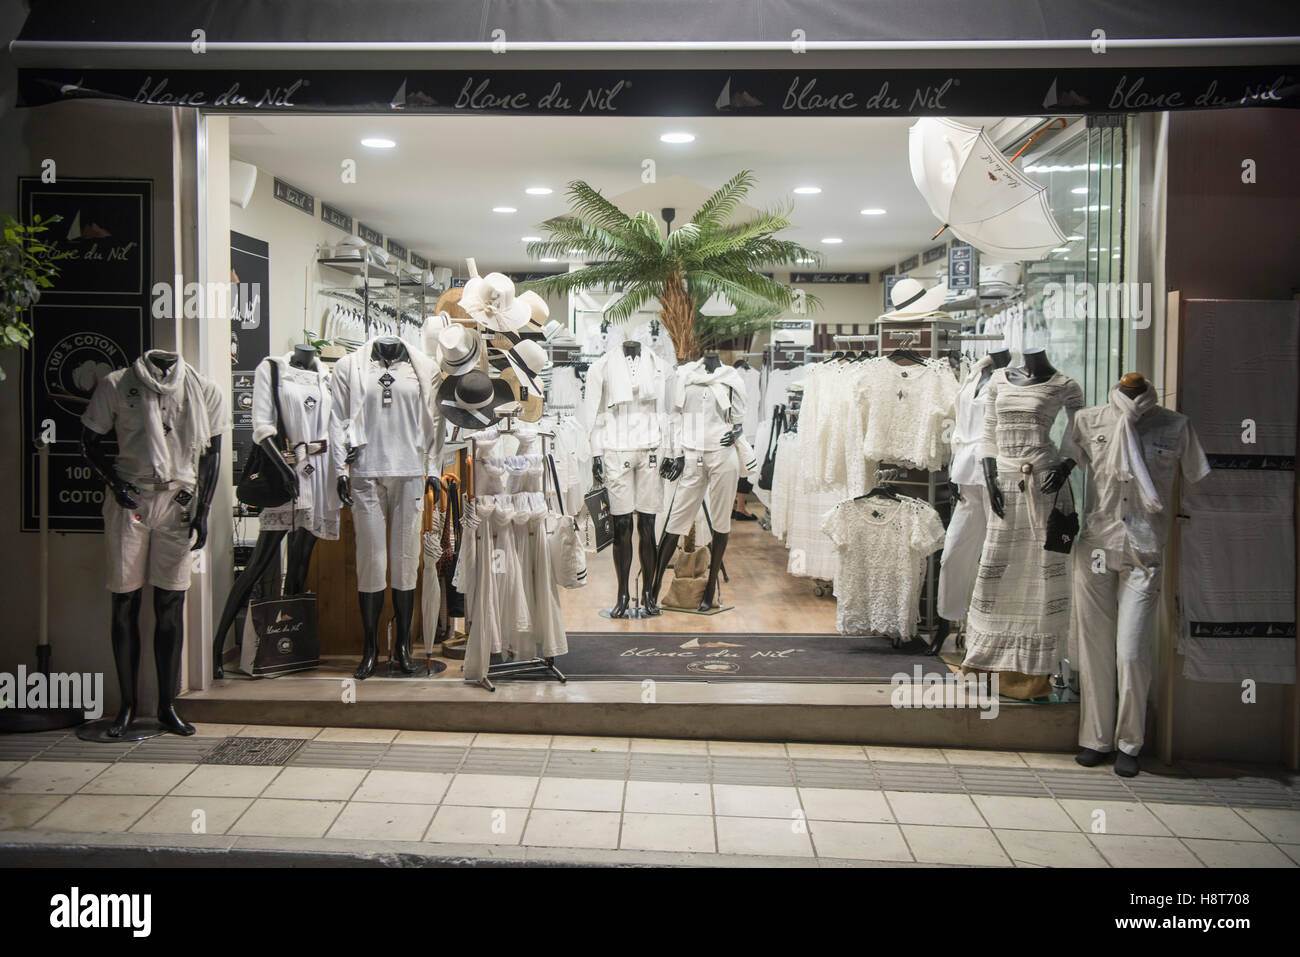 Spanien, Kreta, Agios Nikolaos, Geschäft für weisse Kleidung, Blanc du Nil Banque D'Images